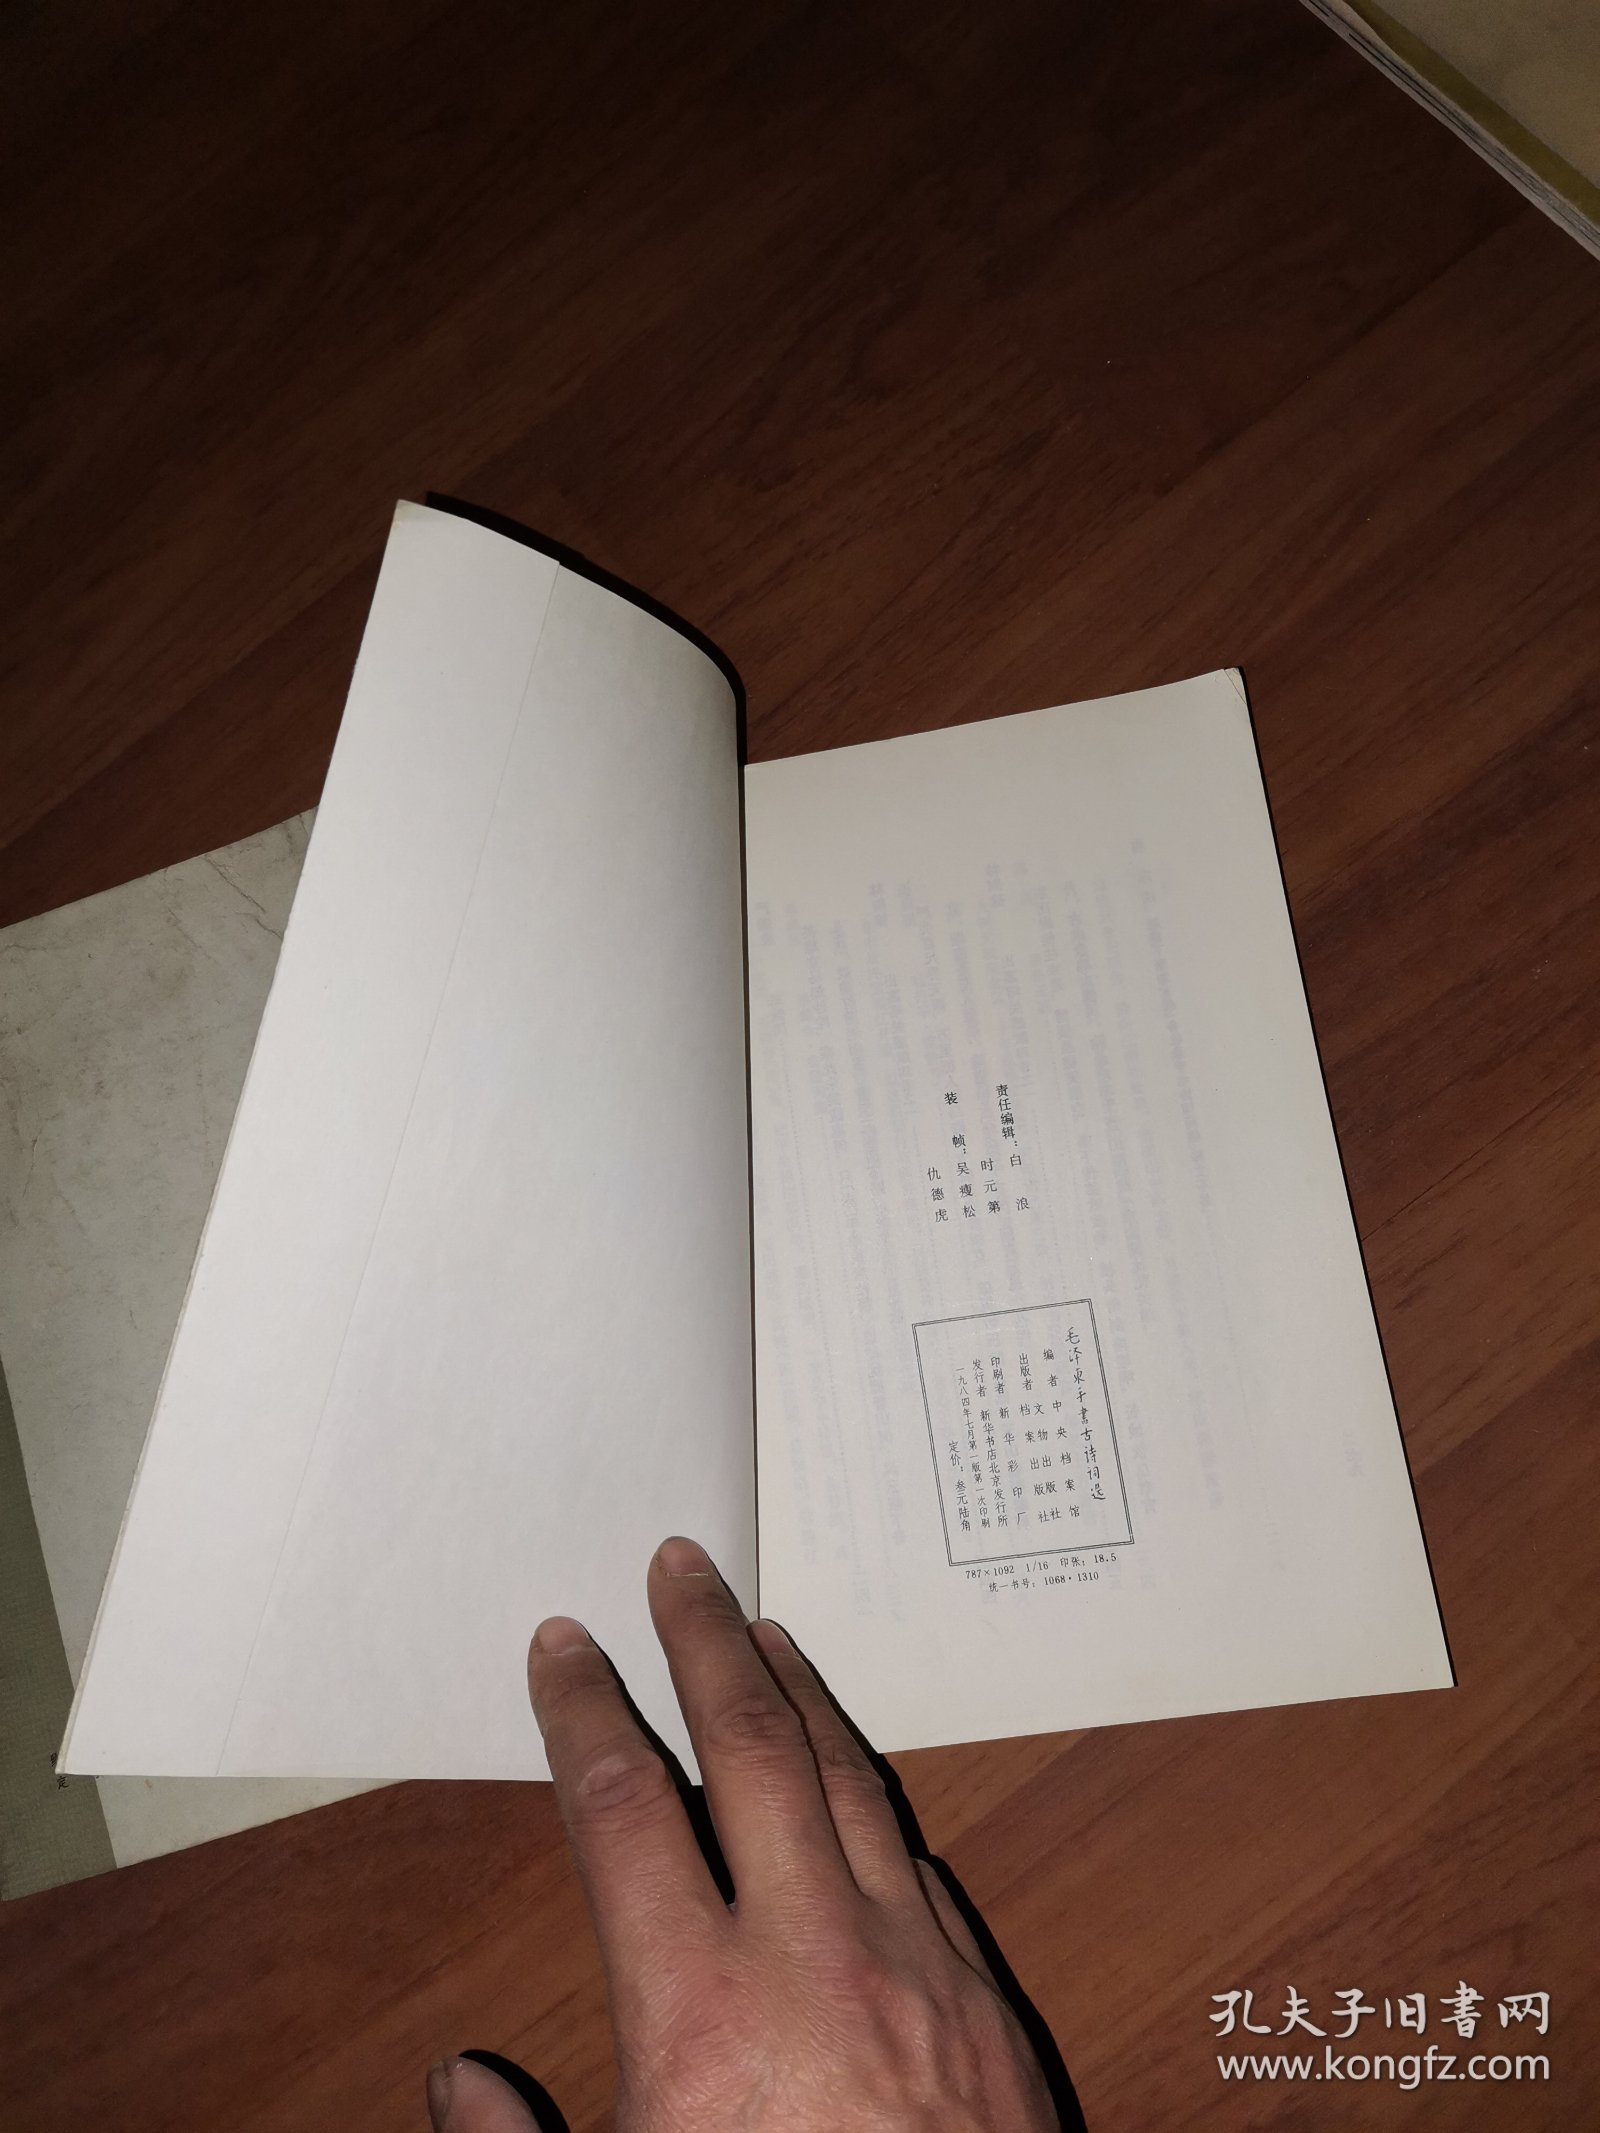 毛泽东手书古诗词选1984年1版1印+毛泽东书信手迹选1983年1版1印（2册合售）单位藏书，好品，封面盖有青龙县委宣传部的印章，一本侧页盖有印章